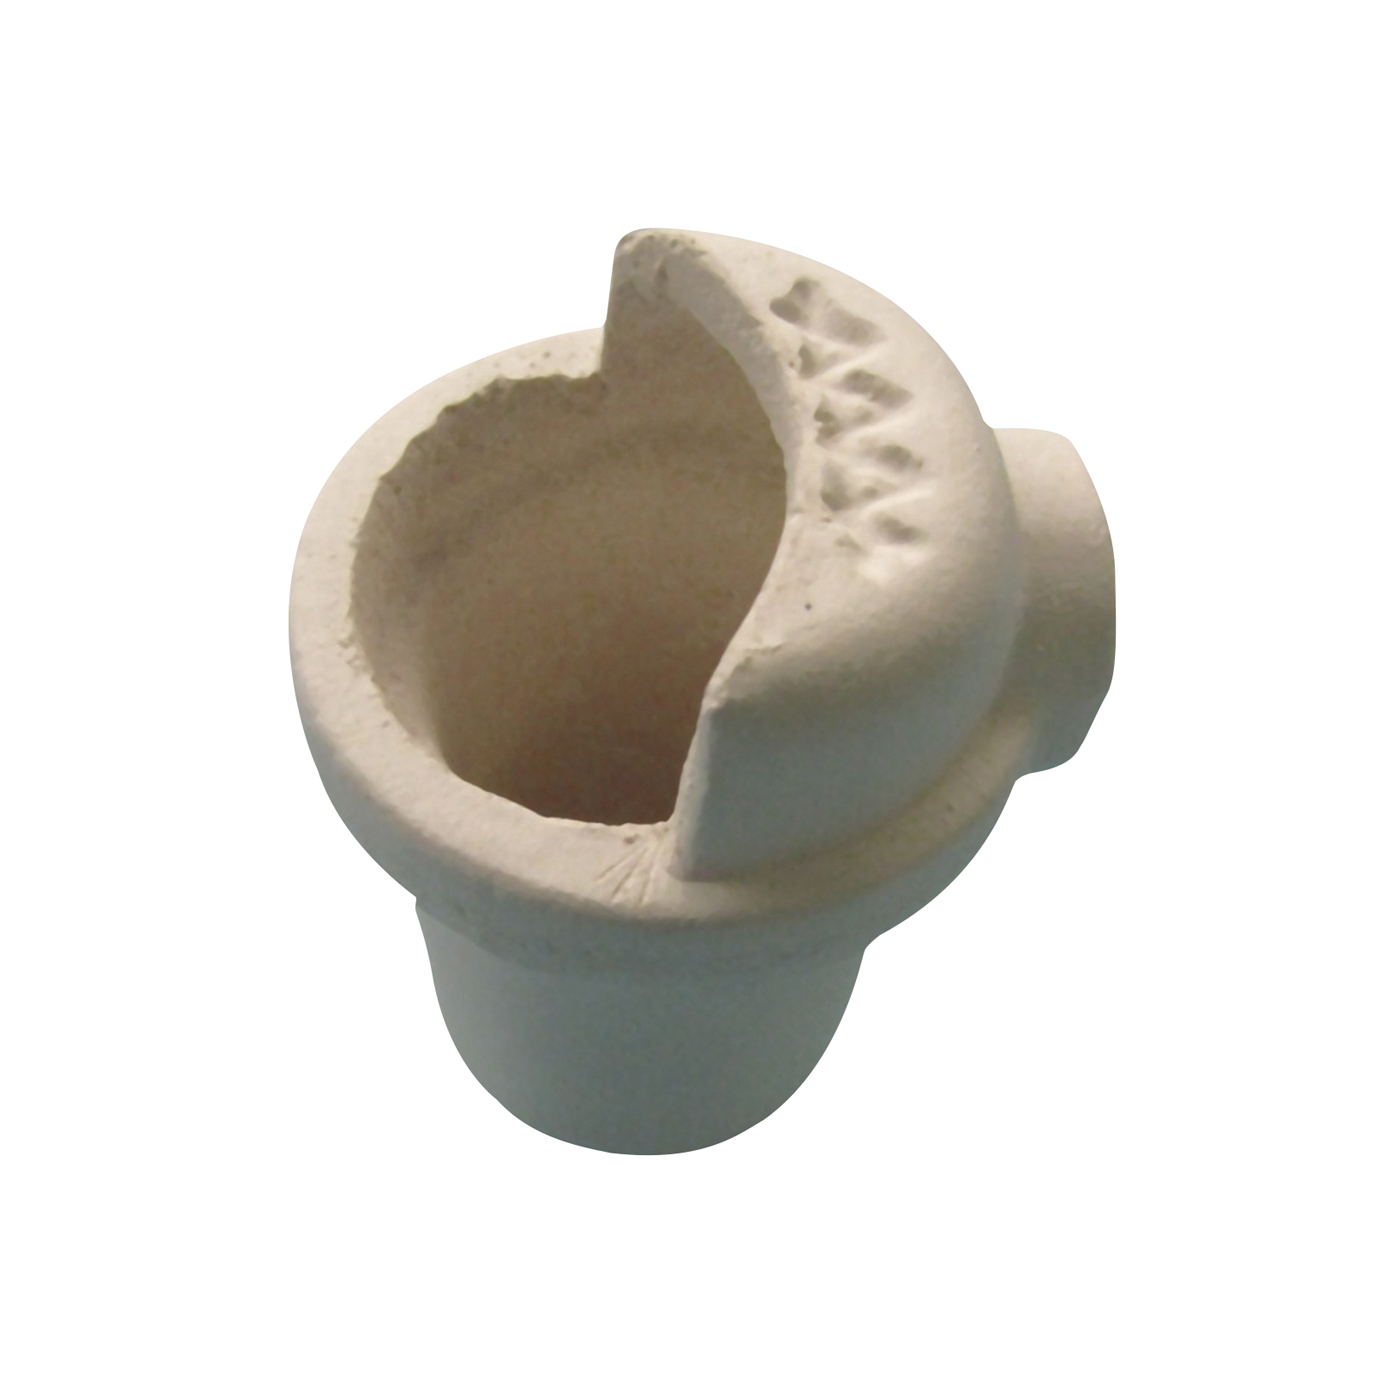 Ceramic Crucible, for Non-Pr. Metal Alloys, CrNi,CrCo, Steel - 1 piece